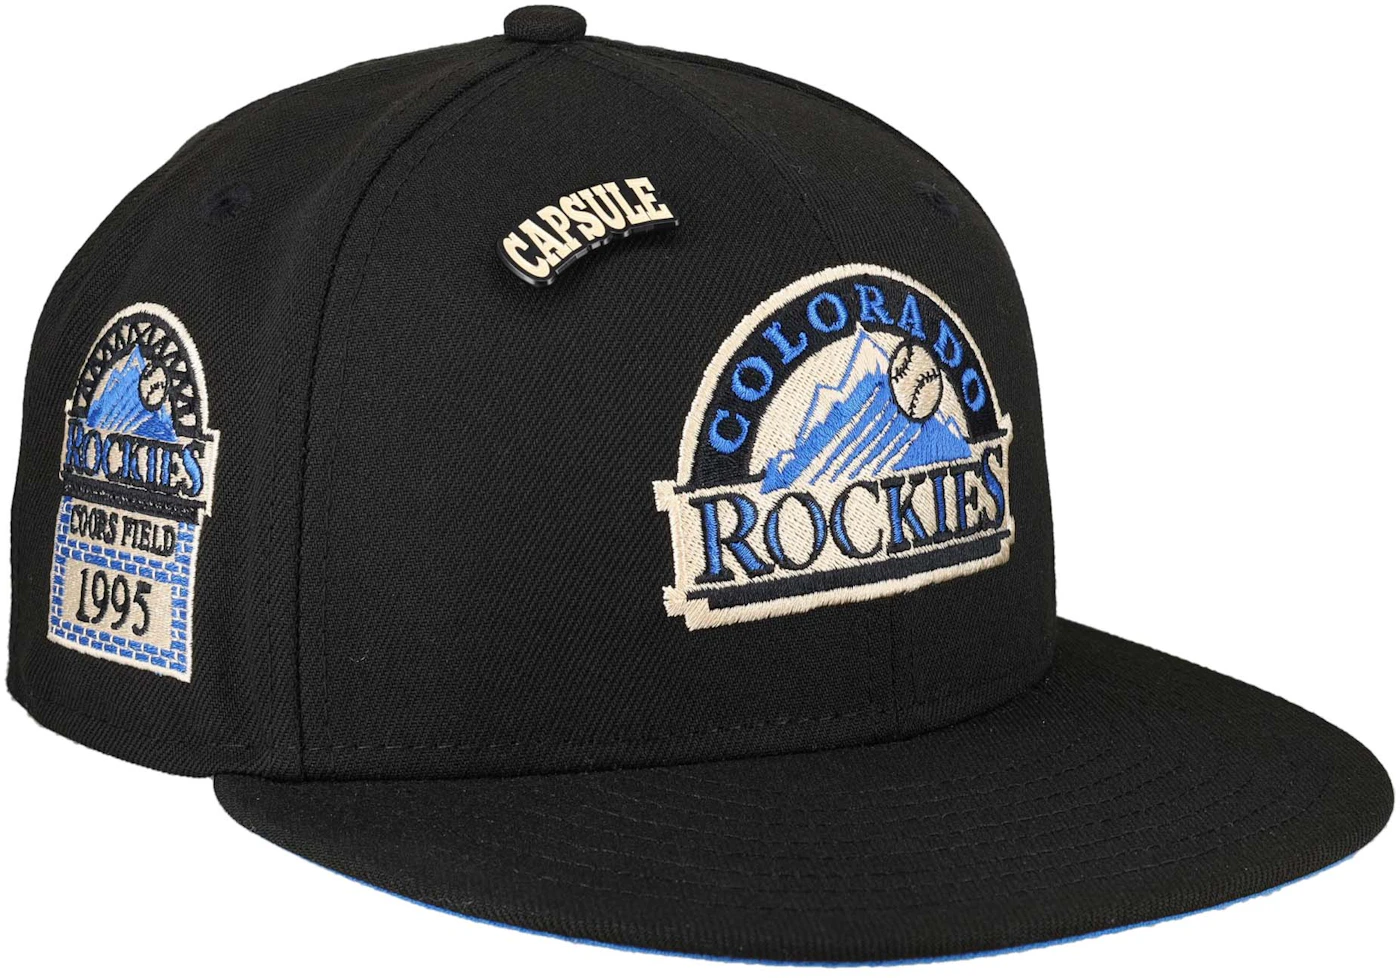 Defunct Colorado Rockies hockey team emblem vintage retro Cap for Sale by  Qrea